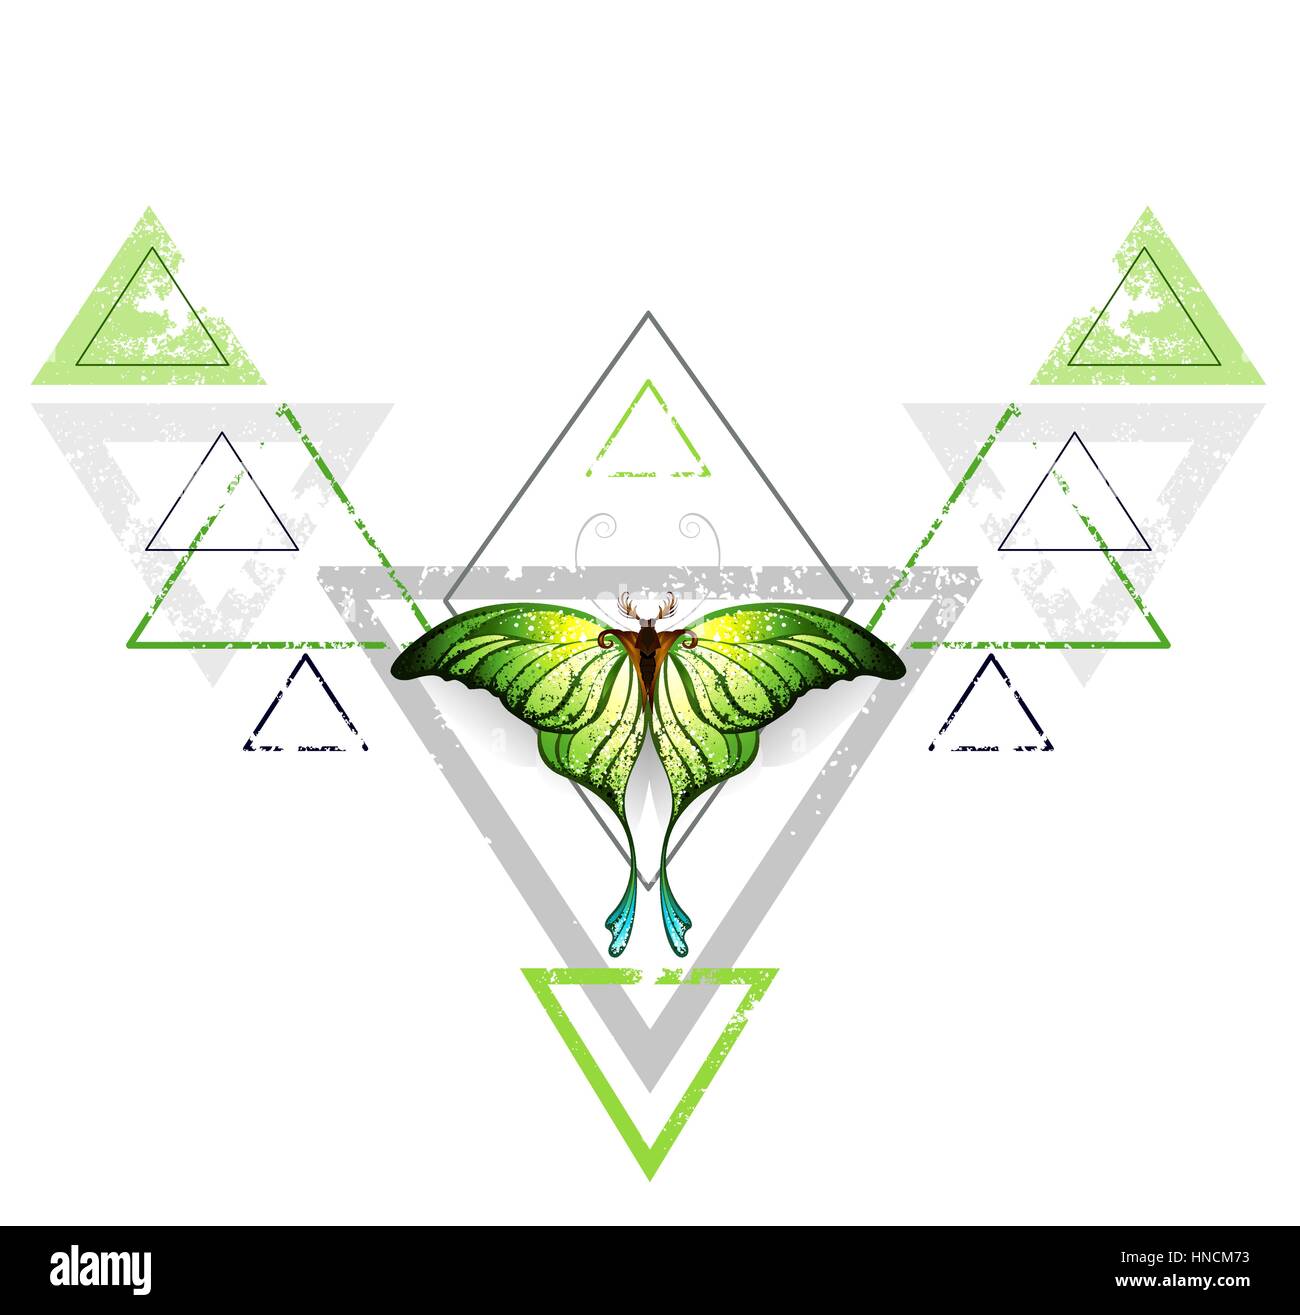 Geometrica, schema simmetrico con il grigio e il triangolo verde, decorato con verde di farfalle esotiche su uno sfondo bianco. Lo stile di tatuaggio. Verde. Tren Illustrazione Vettoriale